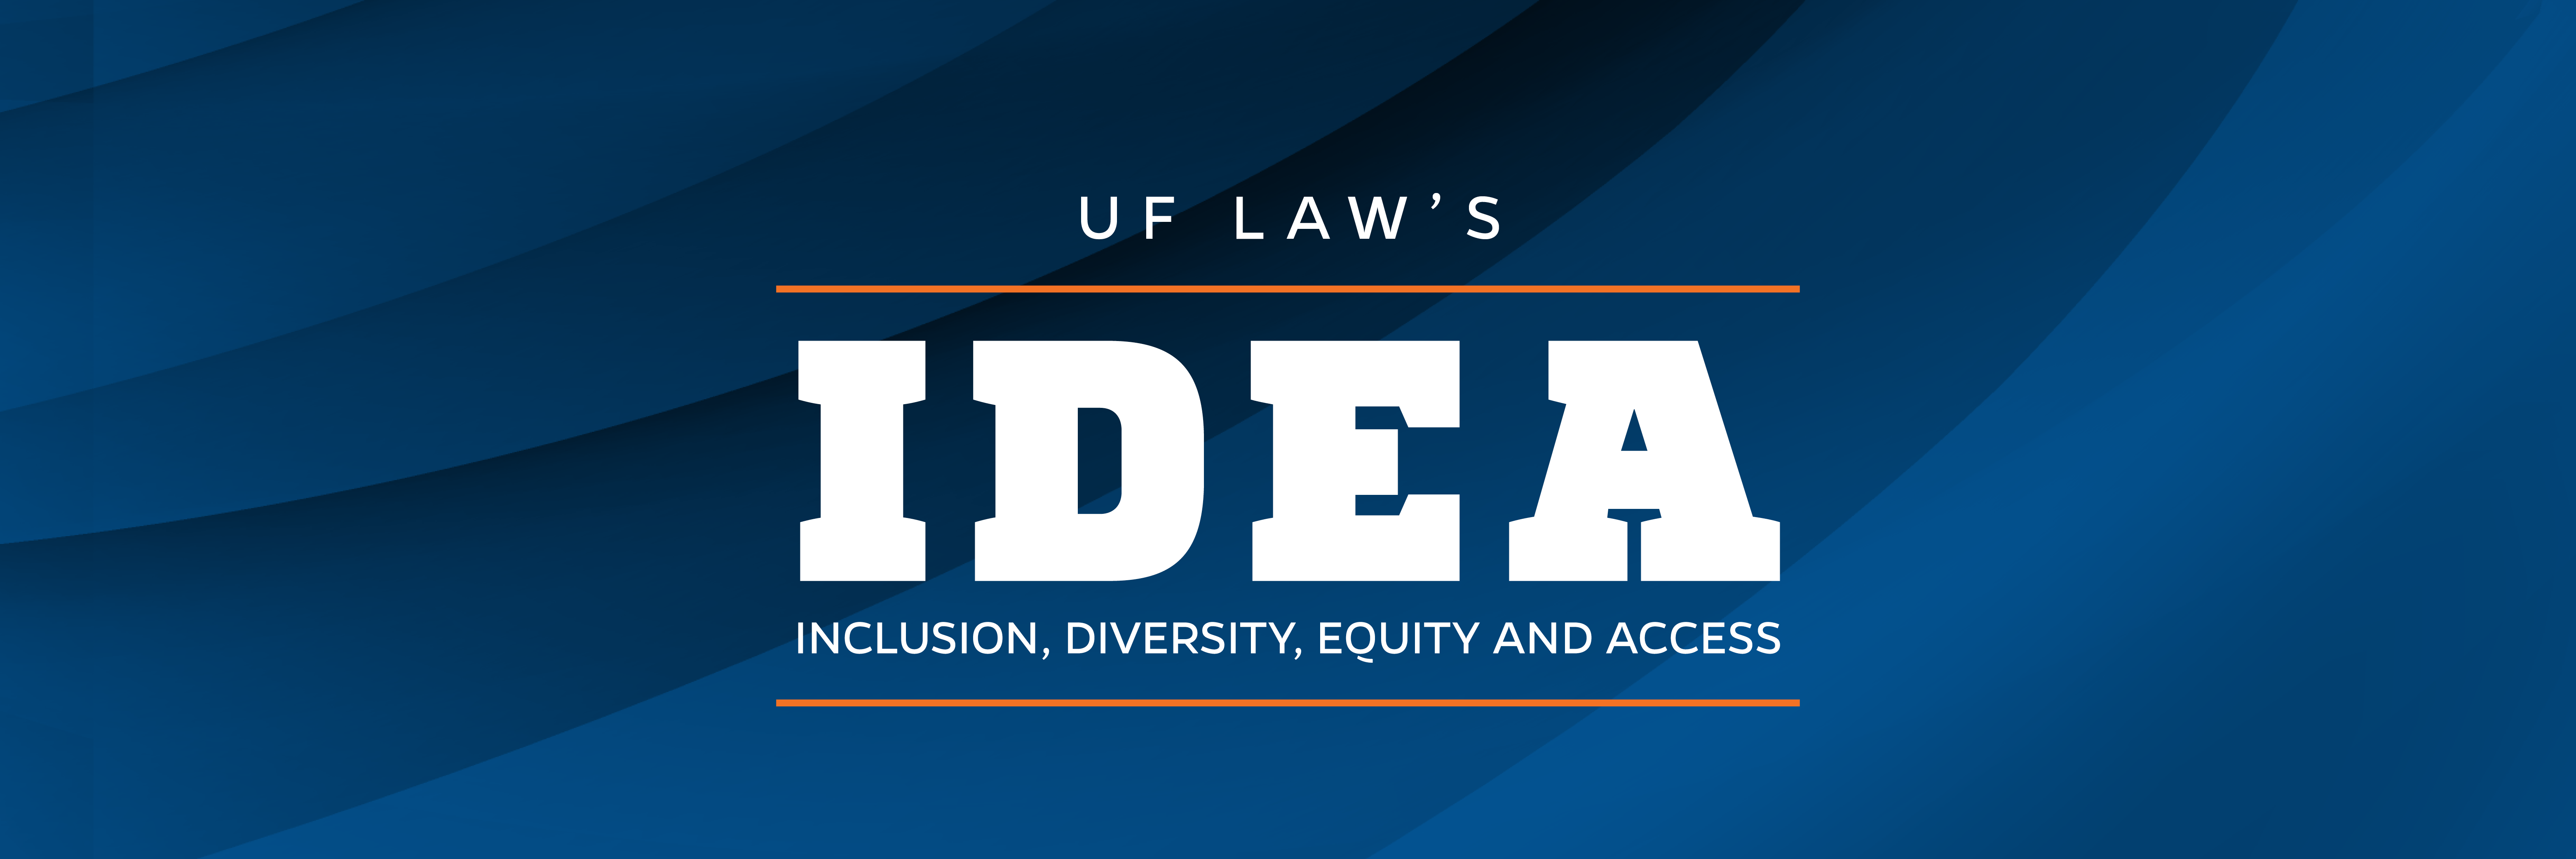 UF Law's IDEA